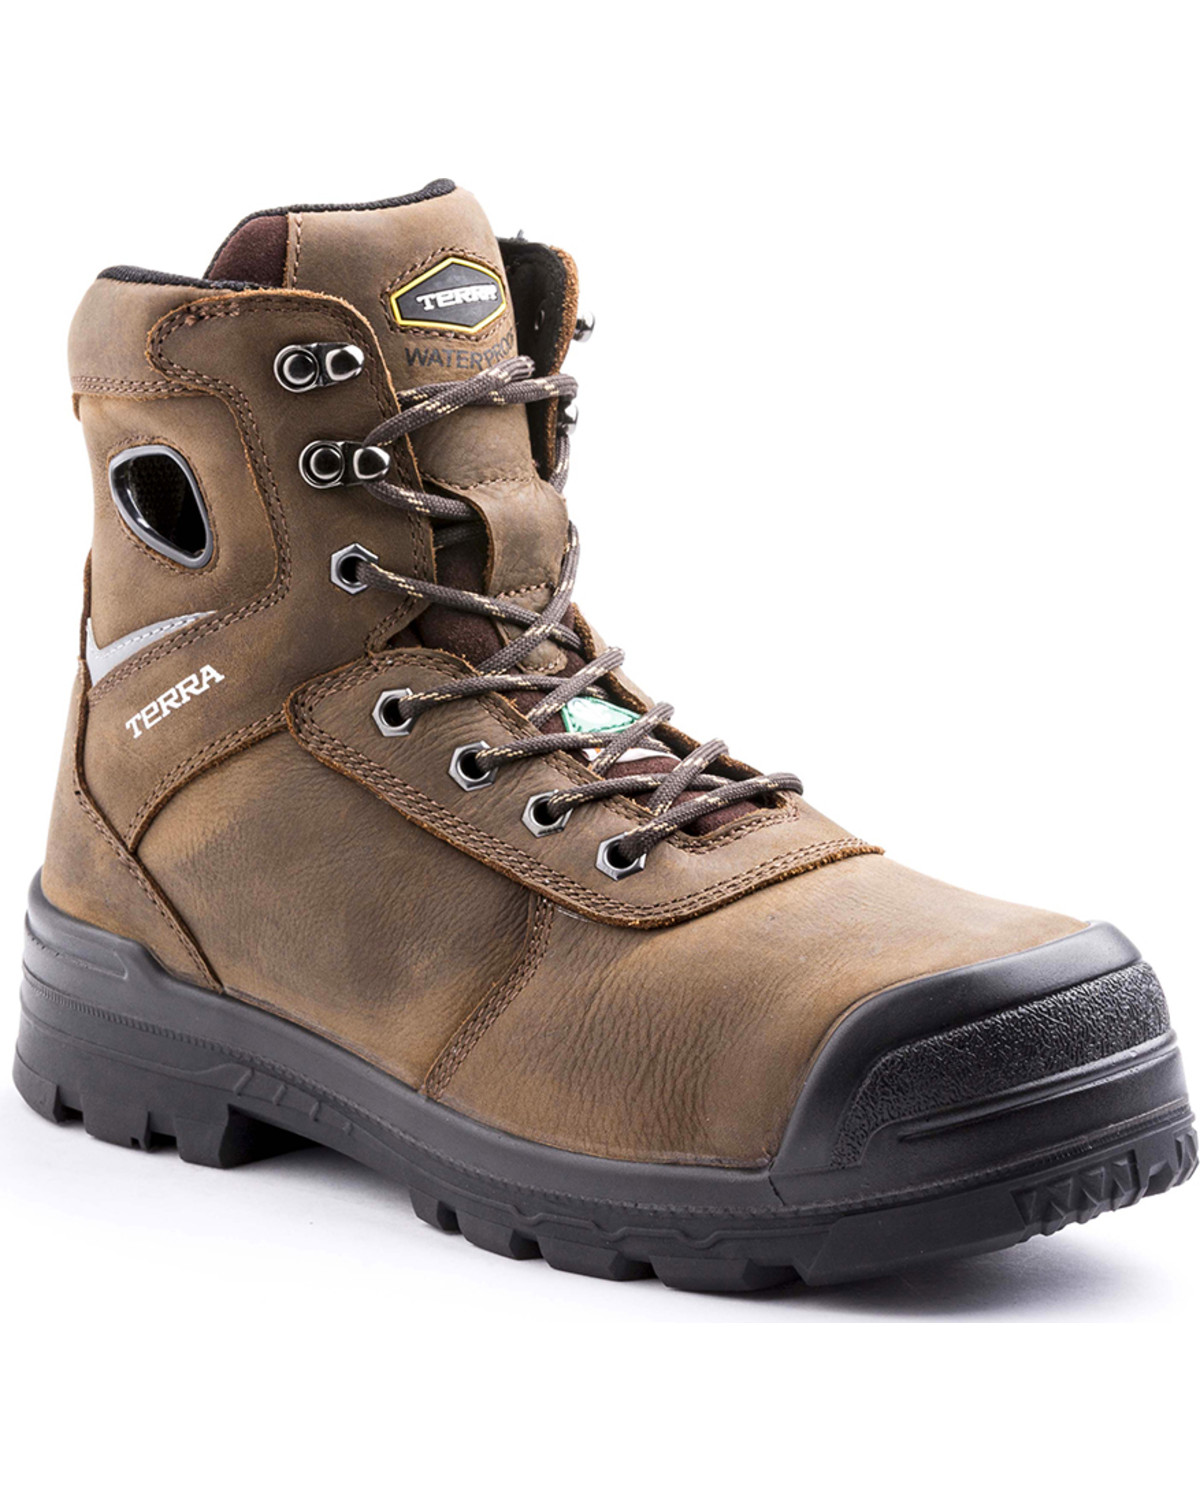 Terra Men's Marshal Work Boots - Composite Toe